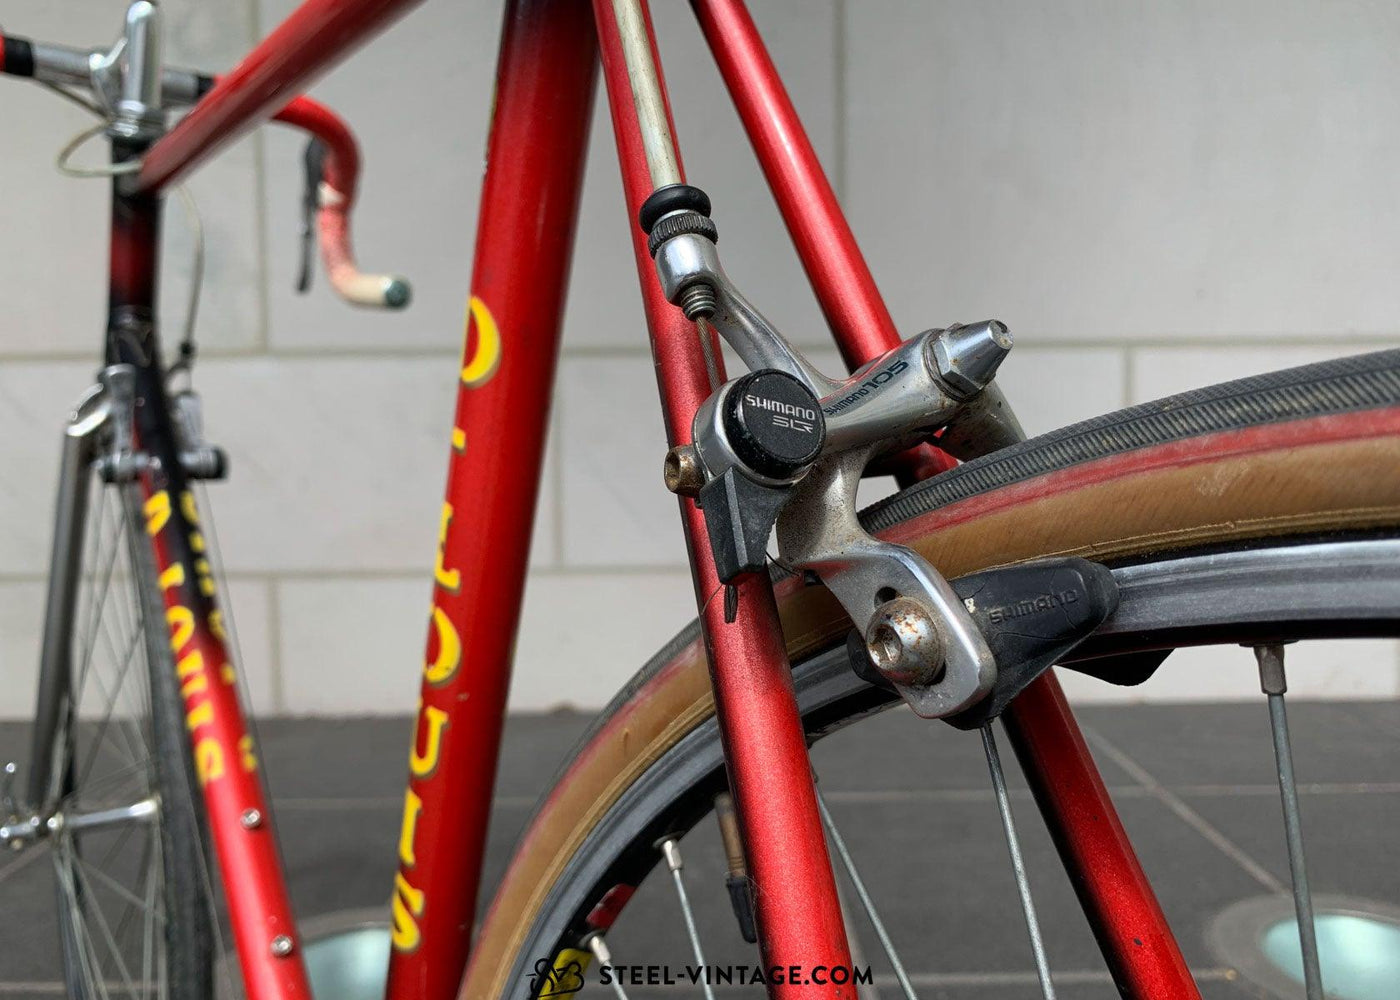 D. Louis Vintage Road Bike 58cm Shimano 105 - Steel Vintage Bikes